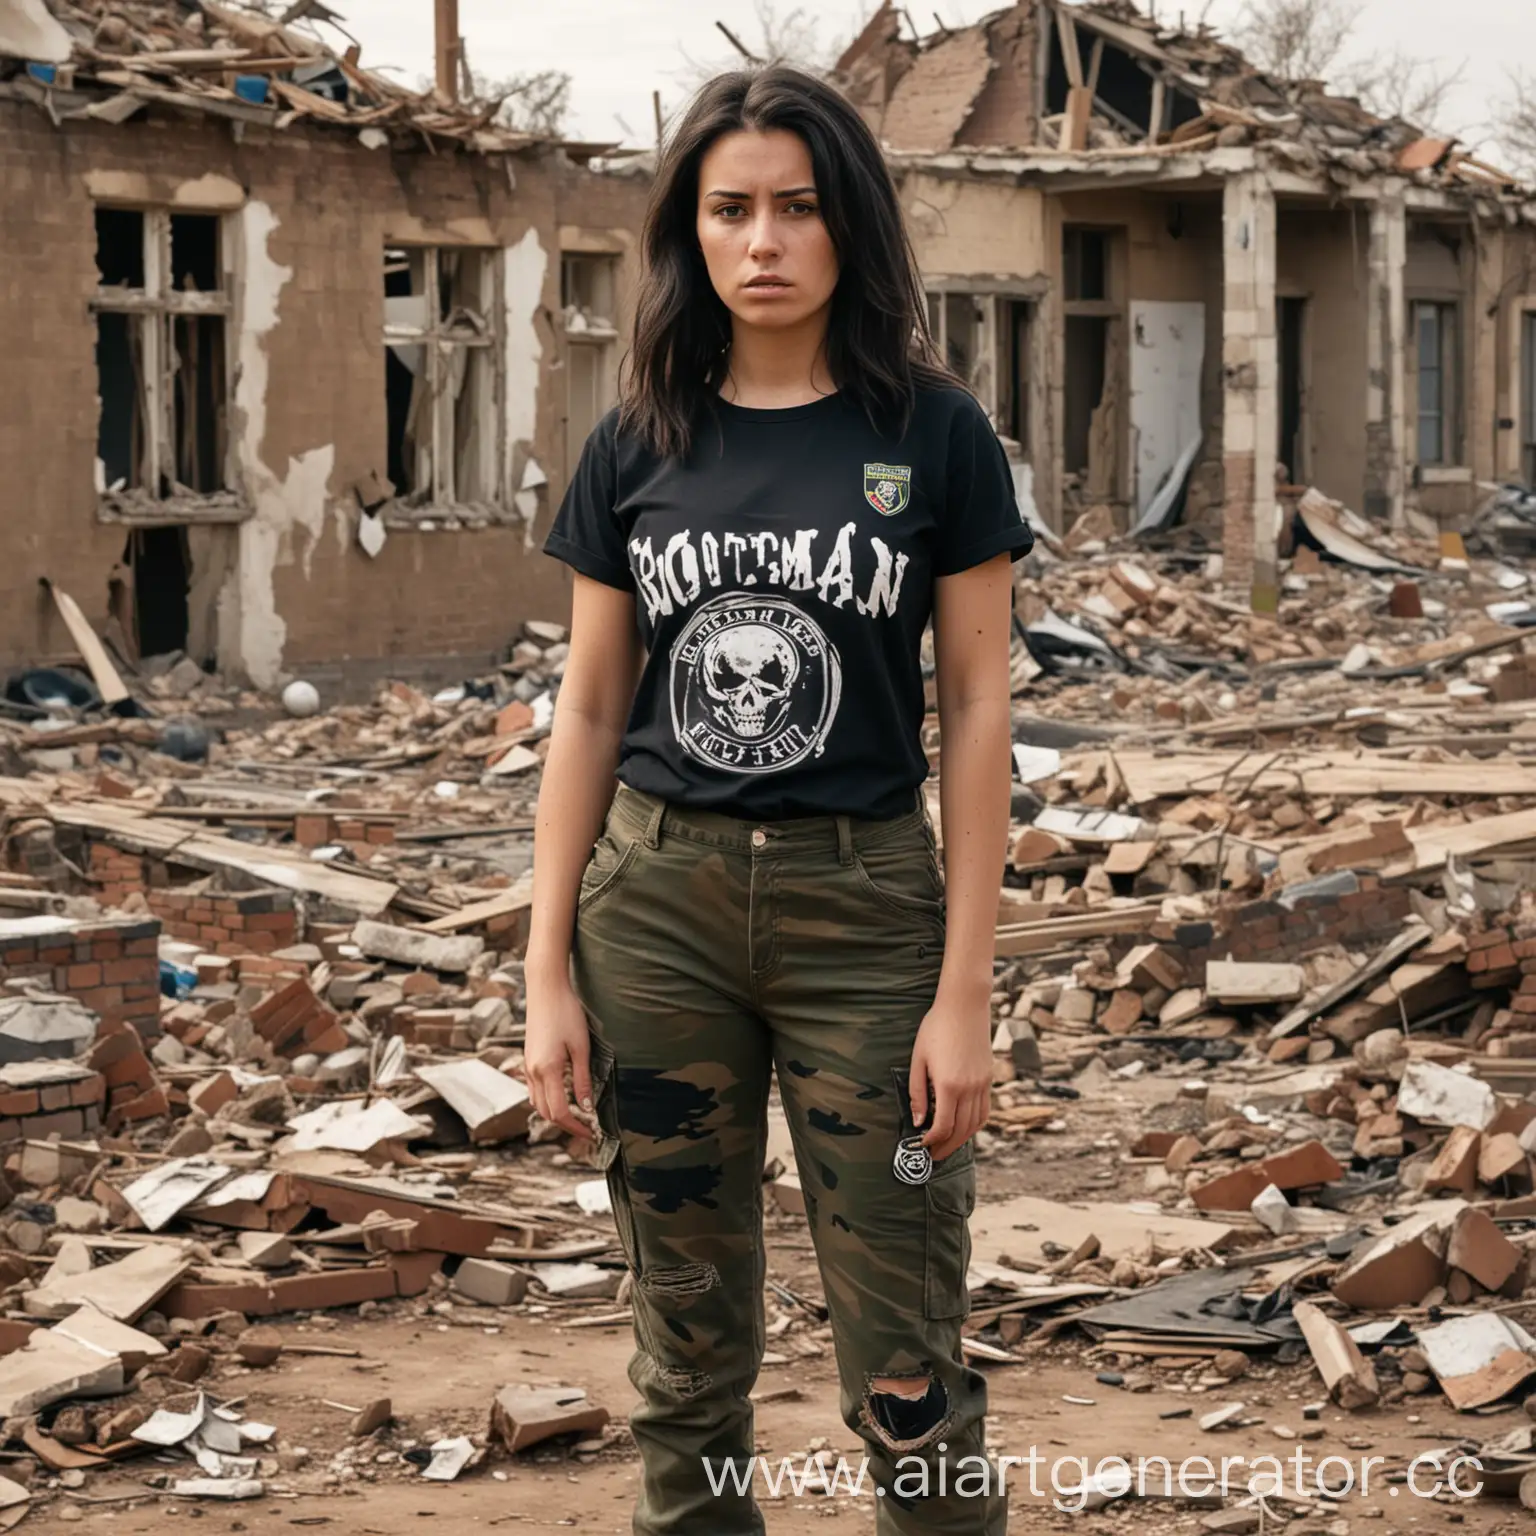 Взрослая девушка стоит на фоне разрушенных войной домов. Она одета в черную порванную футболку и камуфляжные штаны. У нее темные волосы по плечи.  У нее злой взгляд. На ее футболке бейдж с надписью "BOOTMAN". Она военная